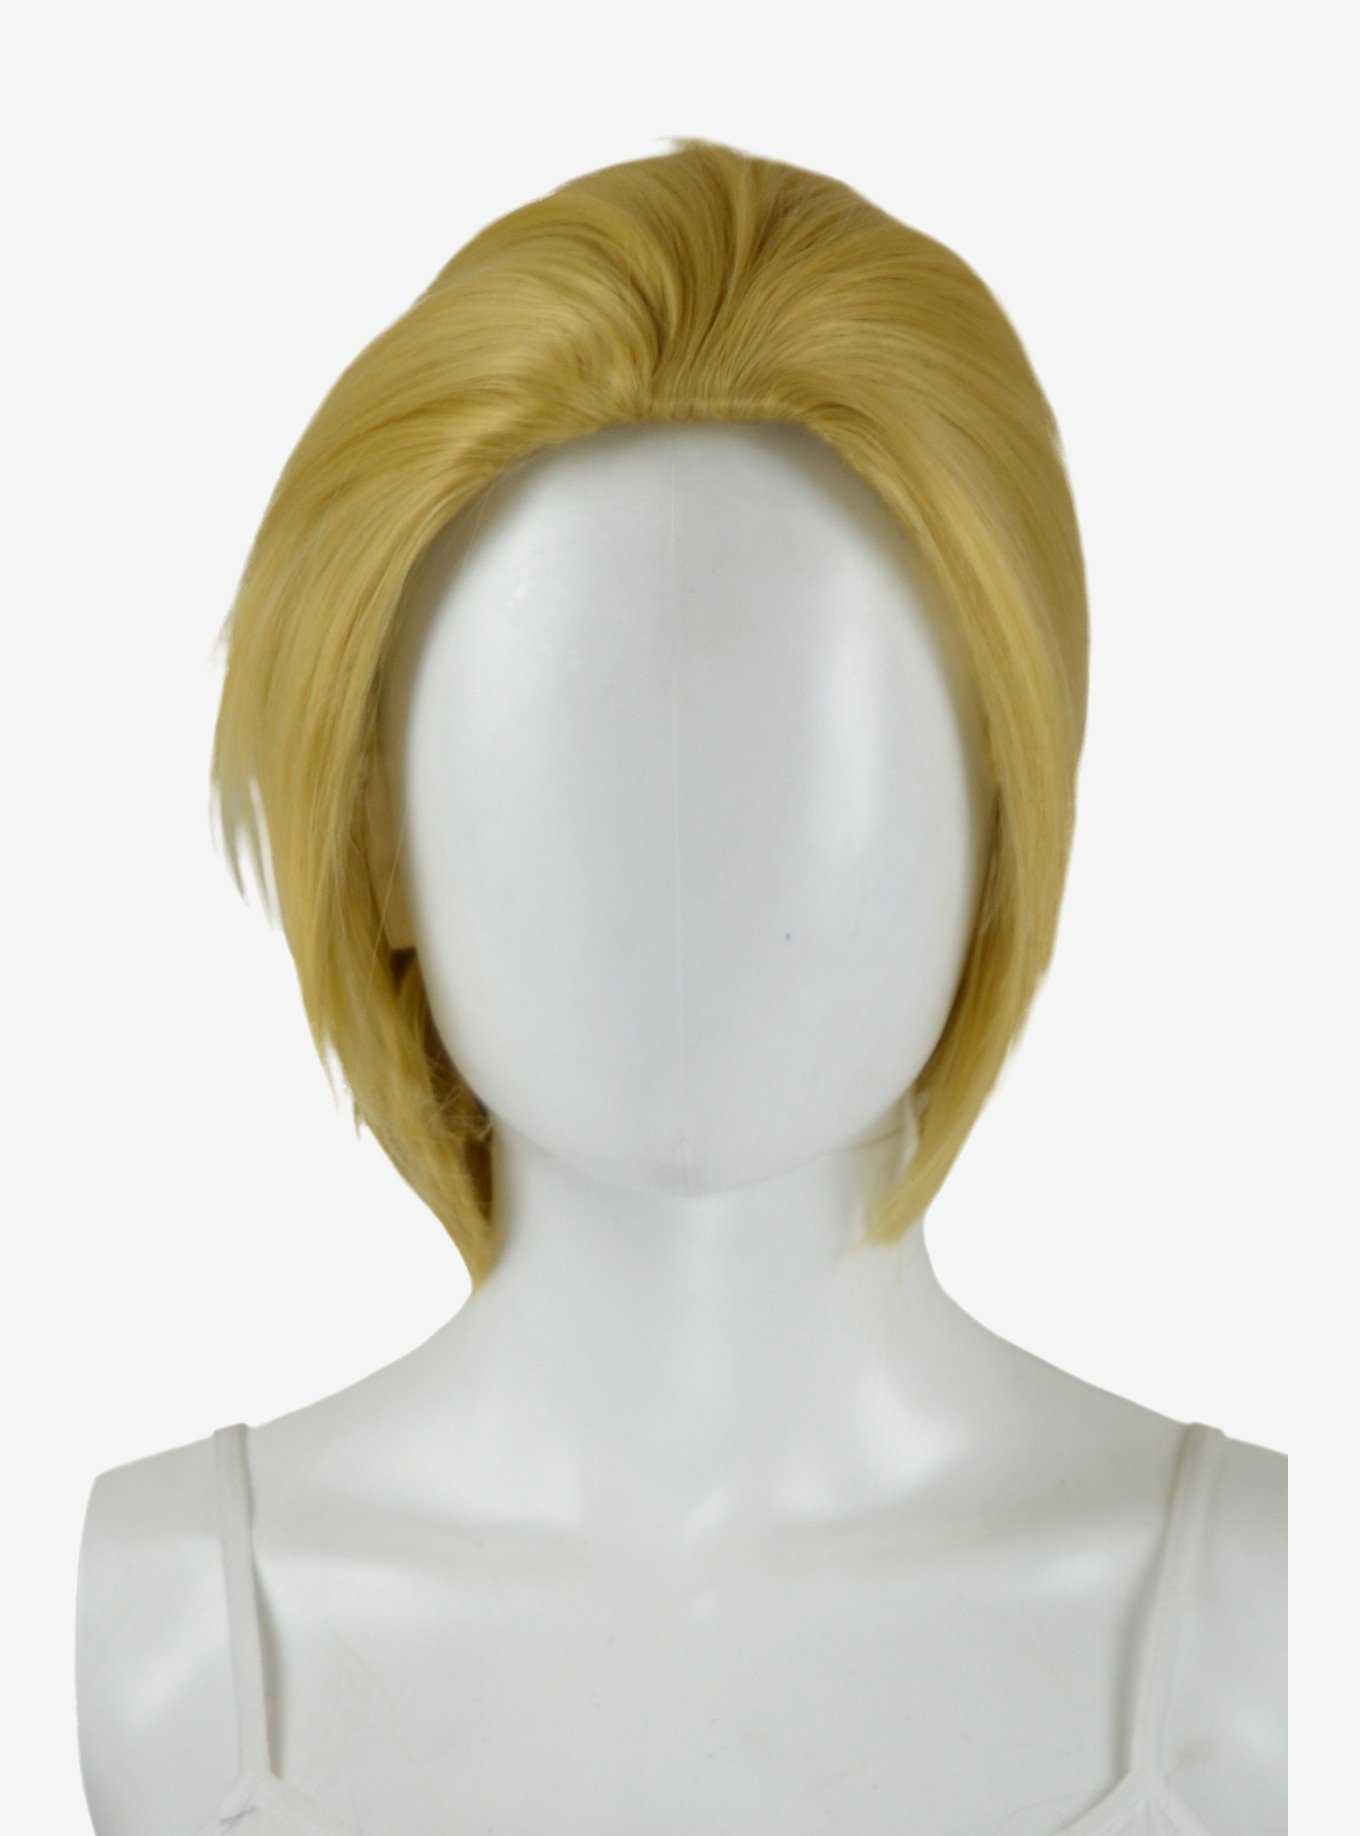 Epic Cosplay Atlas Multipart Caramel Blonde Short Wig, , hi-res